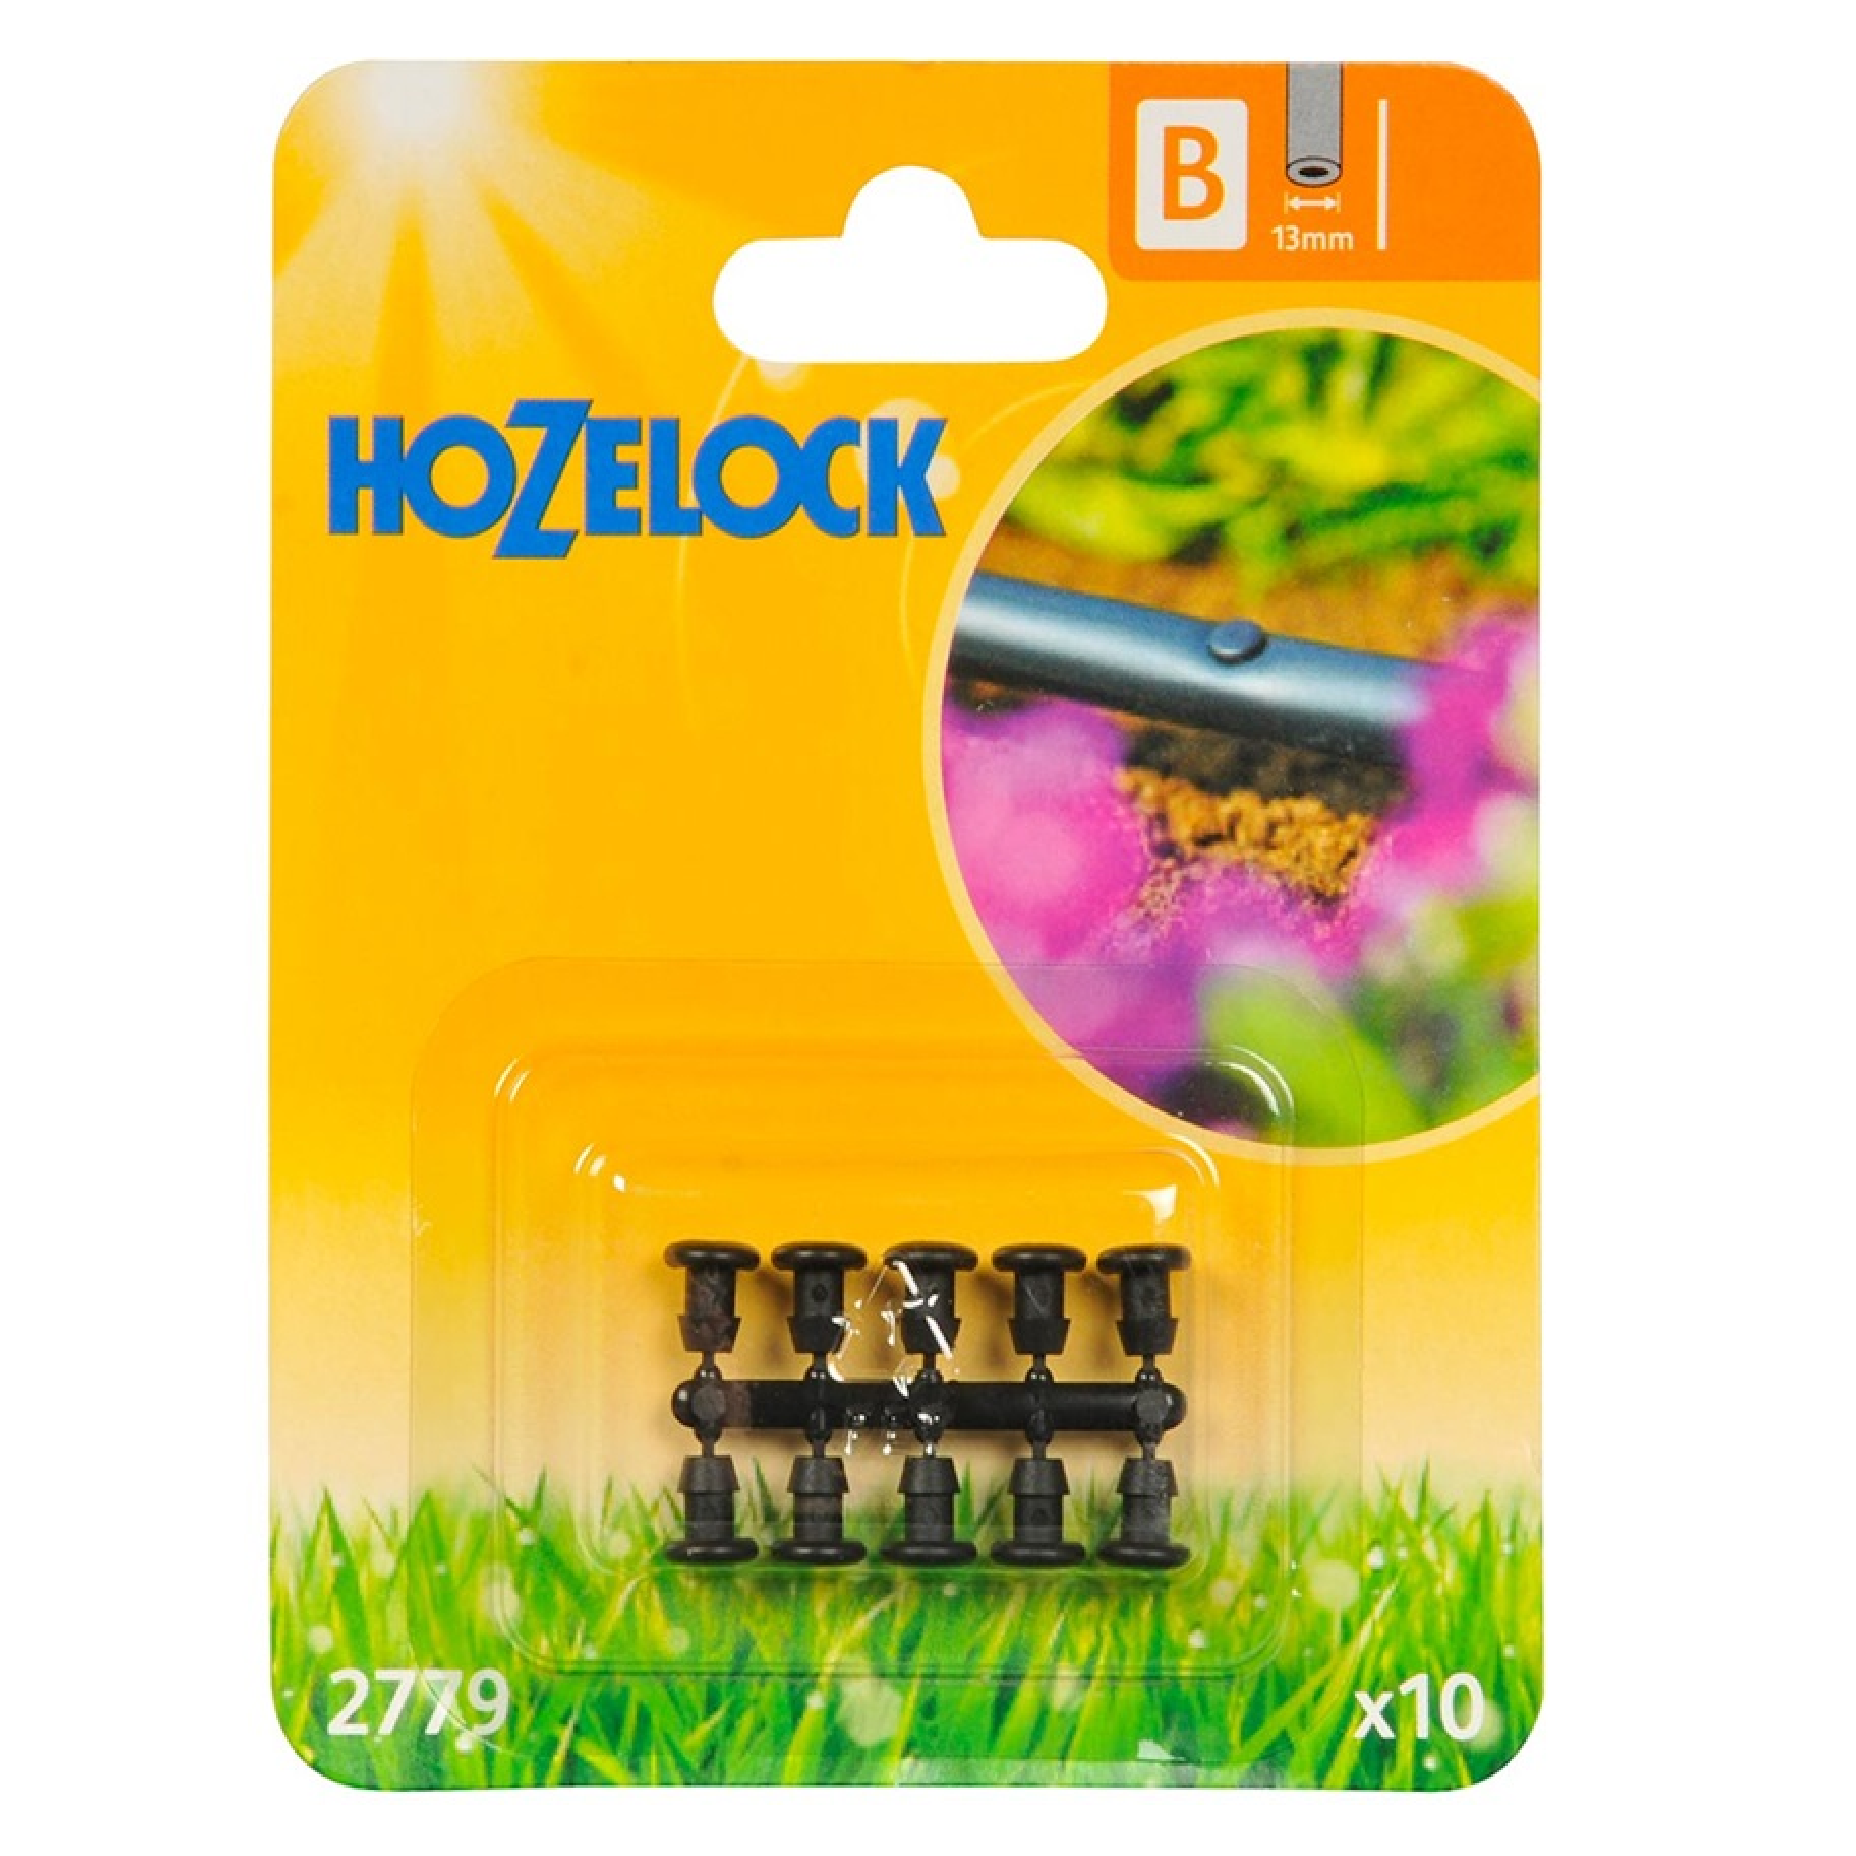 Hozelock BLANKING PLUG For 13MM HARD HOSE 2779, 10PC/Pack